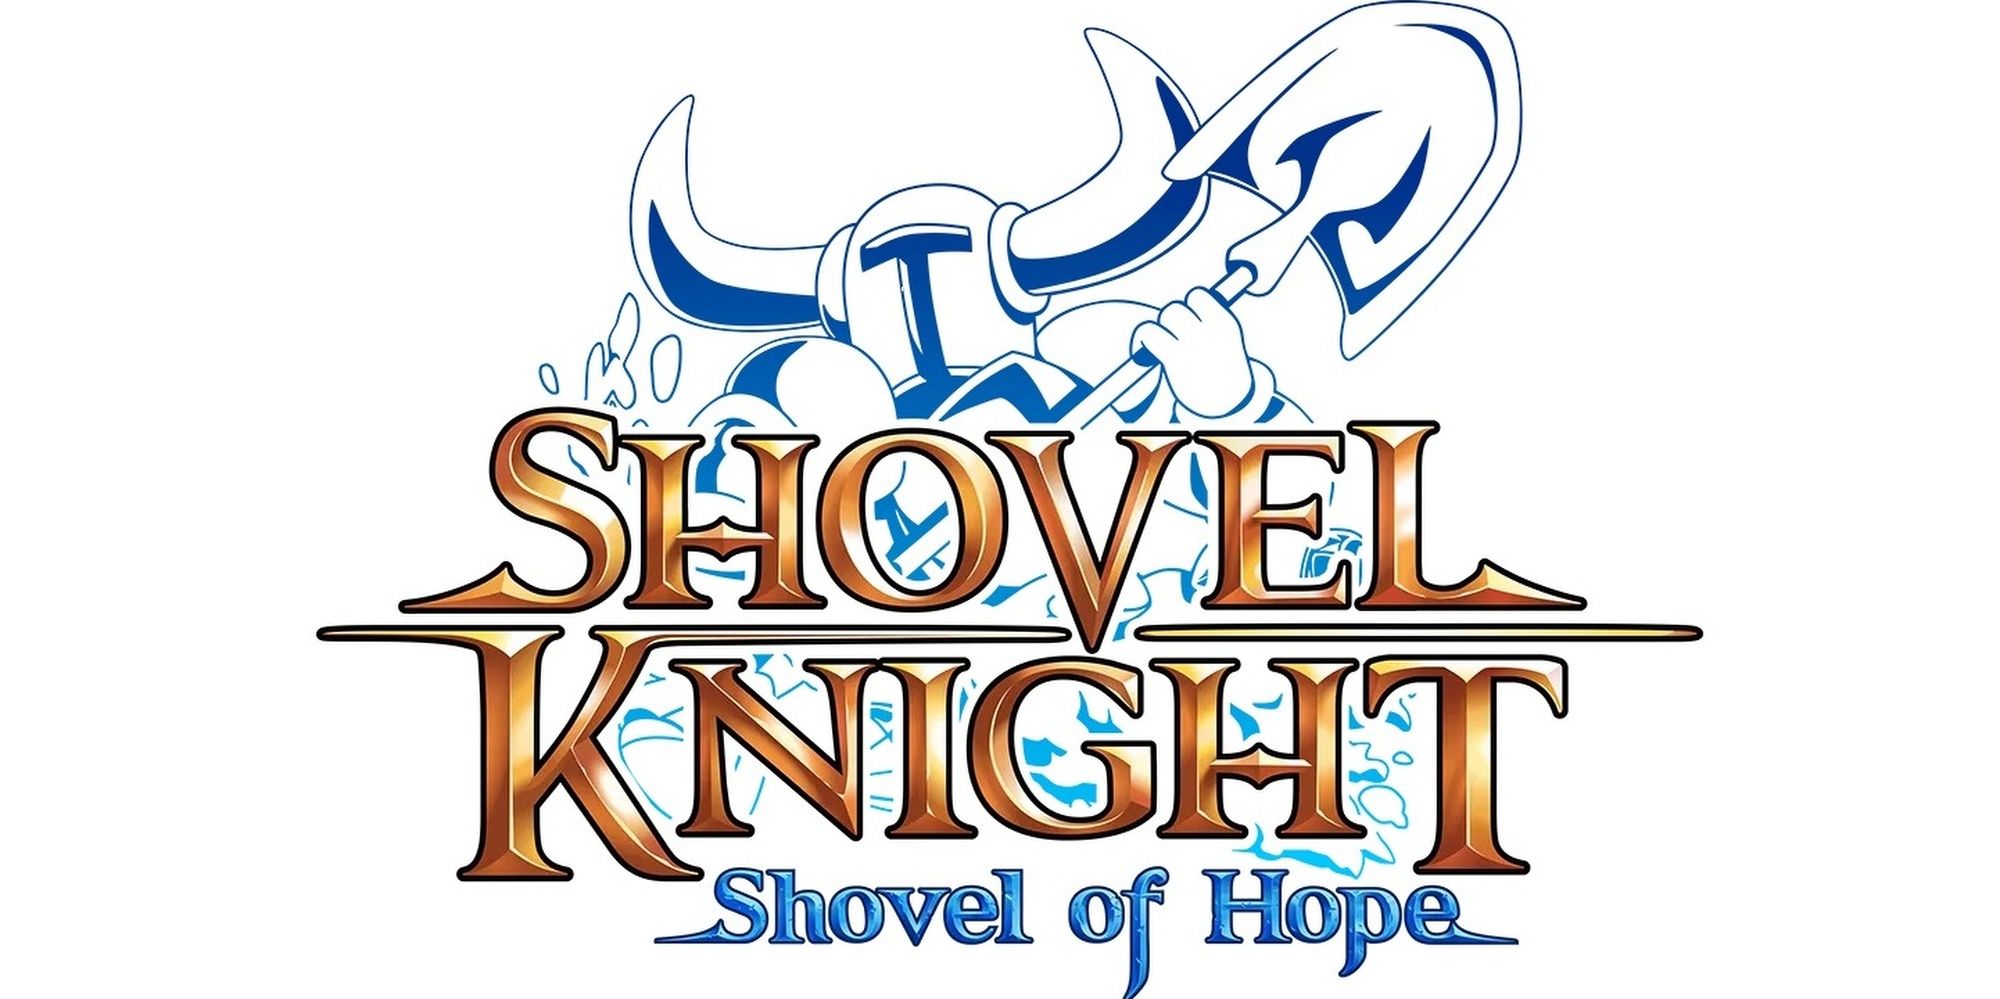 The logo from Shovel Knight Shovel of Hope